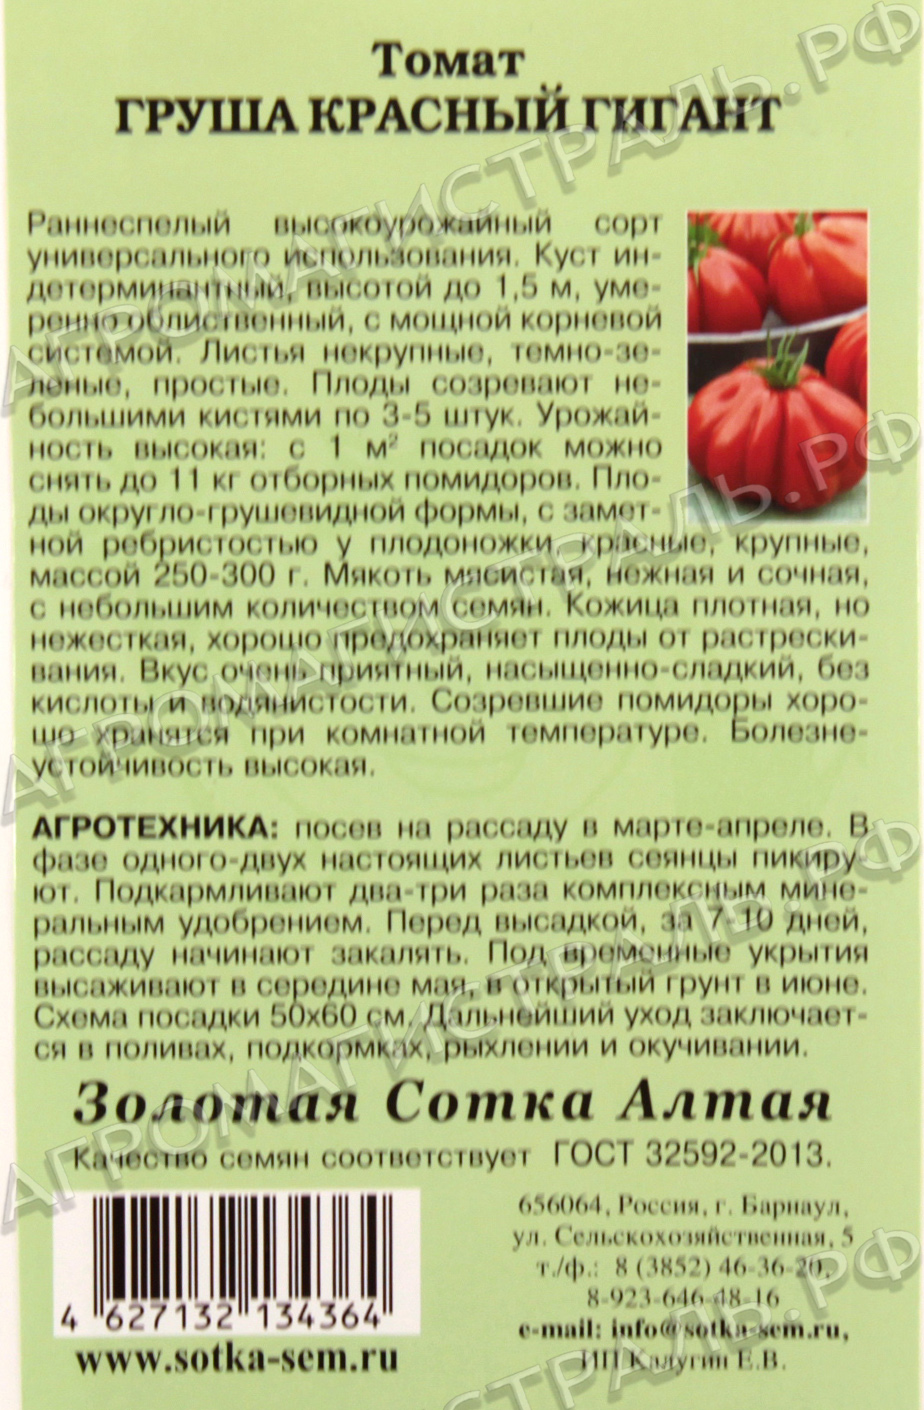 Томат ажур характеристика и описание сорта, фото, советы по выращиванию русский фермер